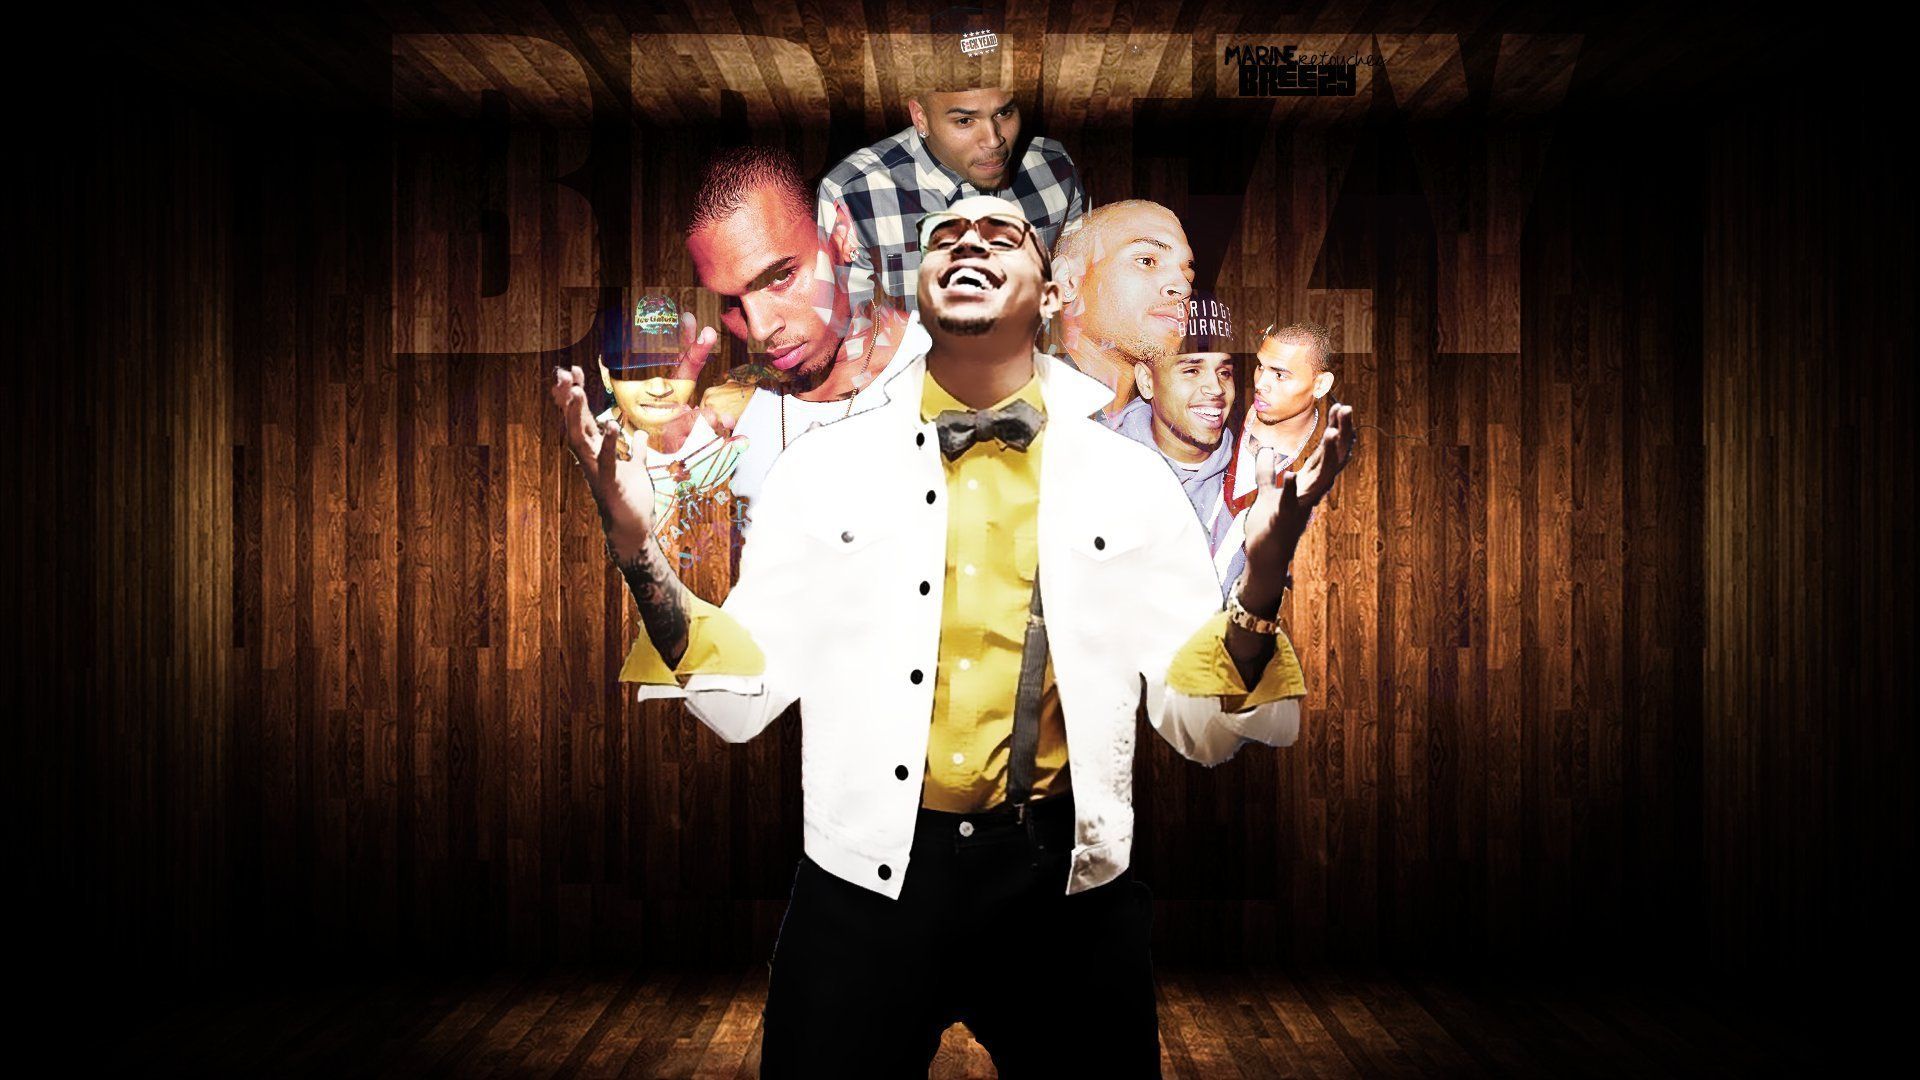 CBred puppet - Chris Brown Wallpaper 26320370 - Fanpop